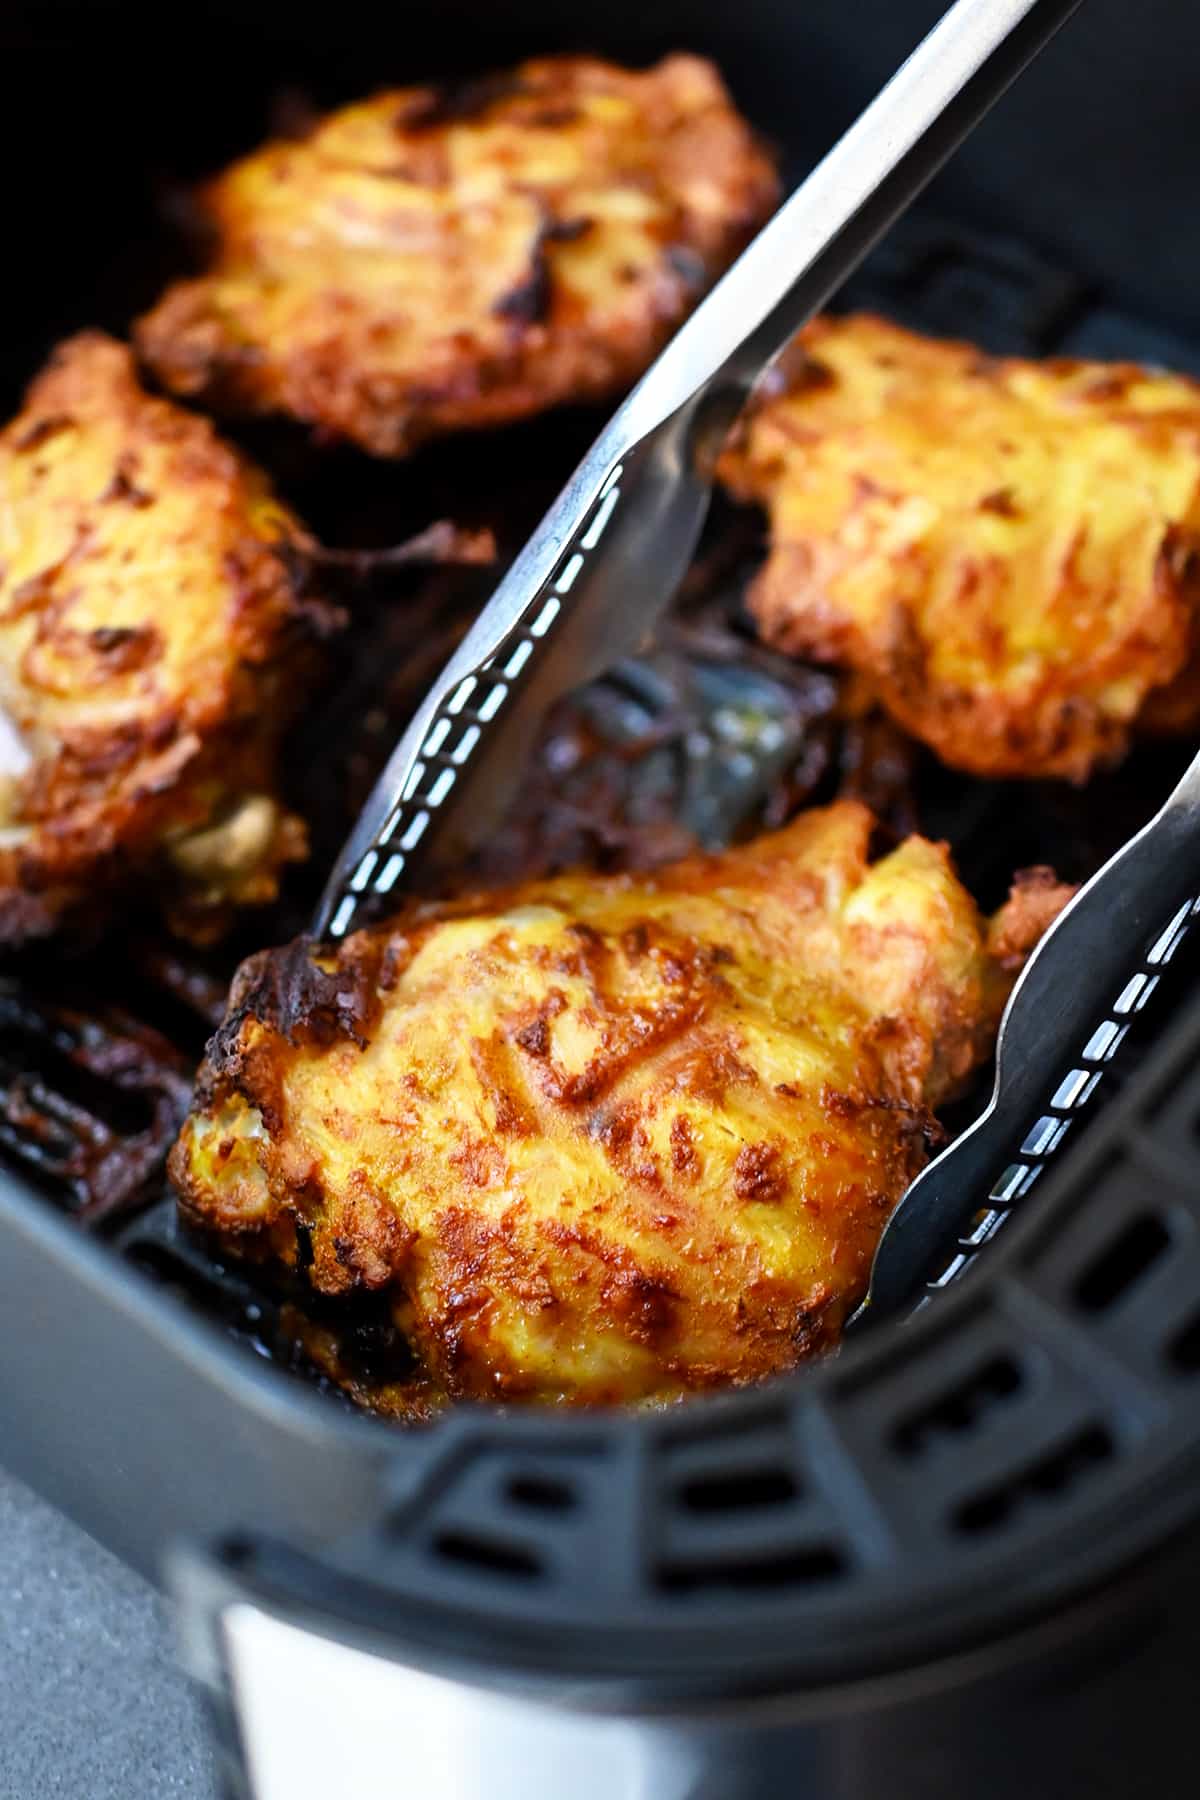 A pair of tongs is grabbing a golden brown tandoori chicken thigh from an open air fryer.